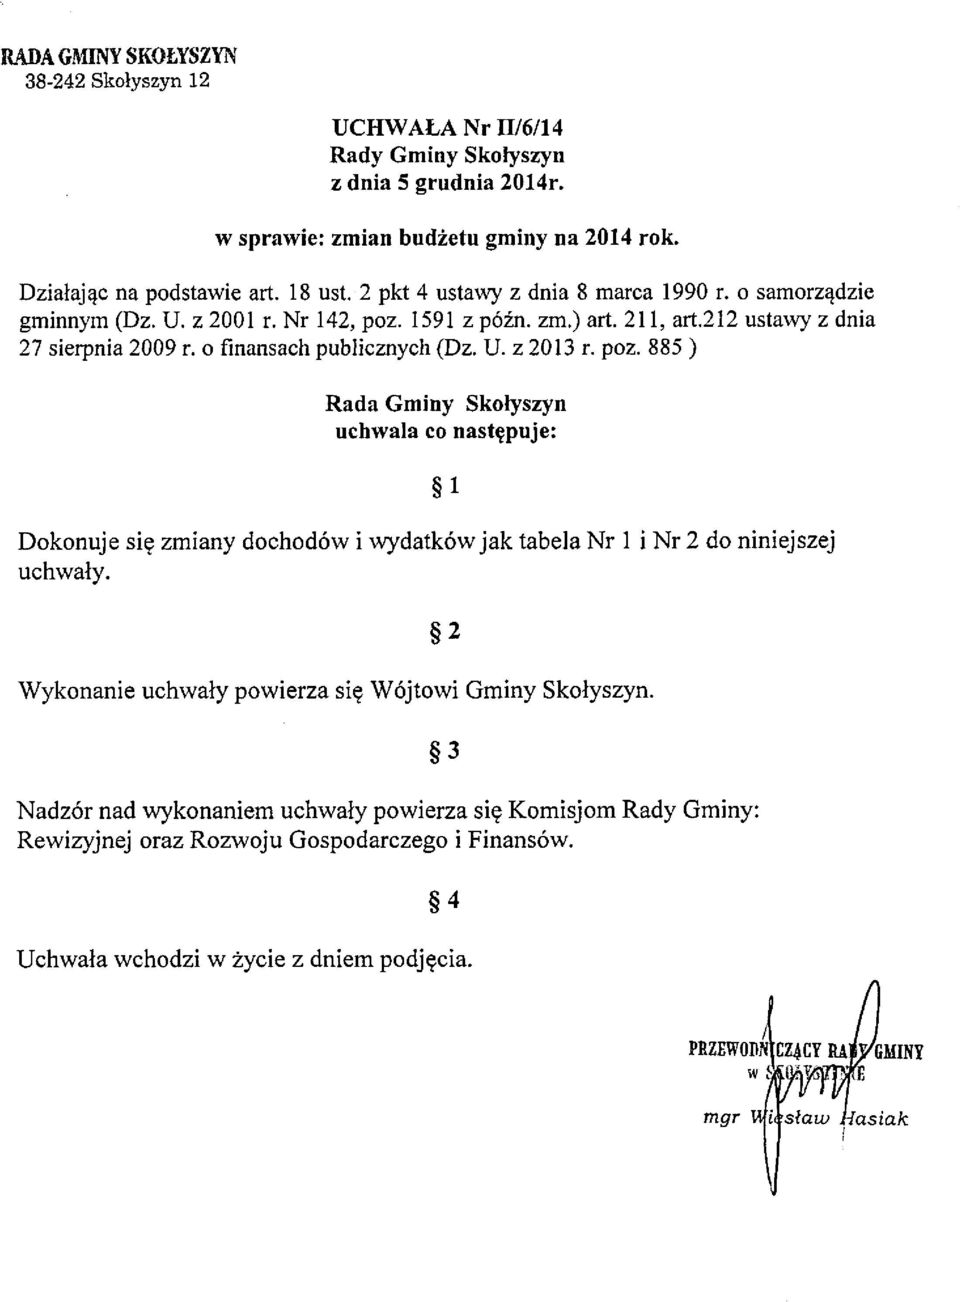 U. z 2013 r. poz. 885 ) Rada Gminy Skołyszyn uchwala co następuje: Dokonuje się zmiany dochodów i wydatków jak tabela Nr 1 i Nr 2 do niniejszej uchwały.